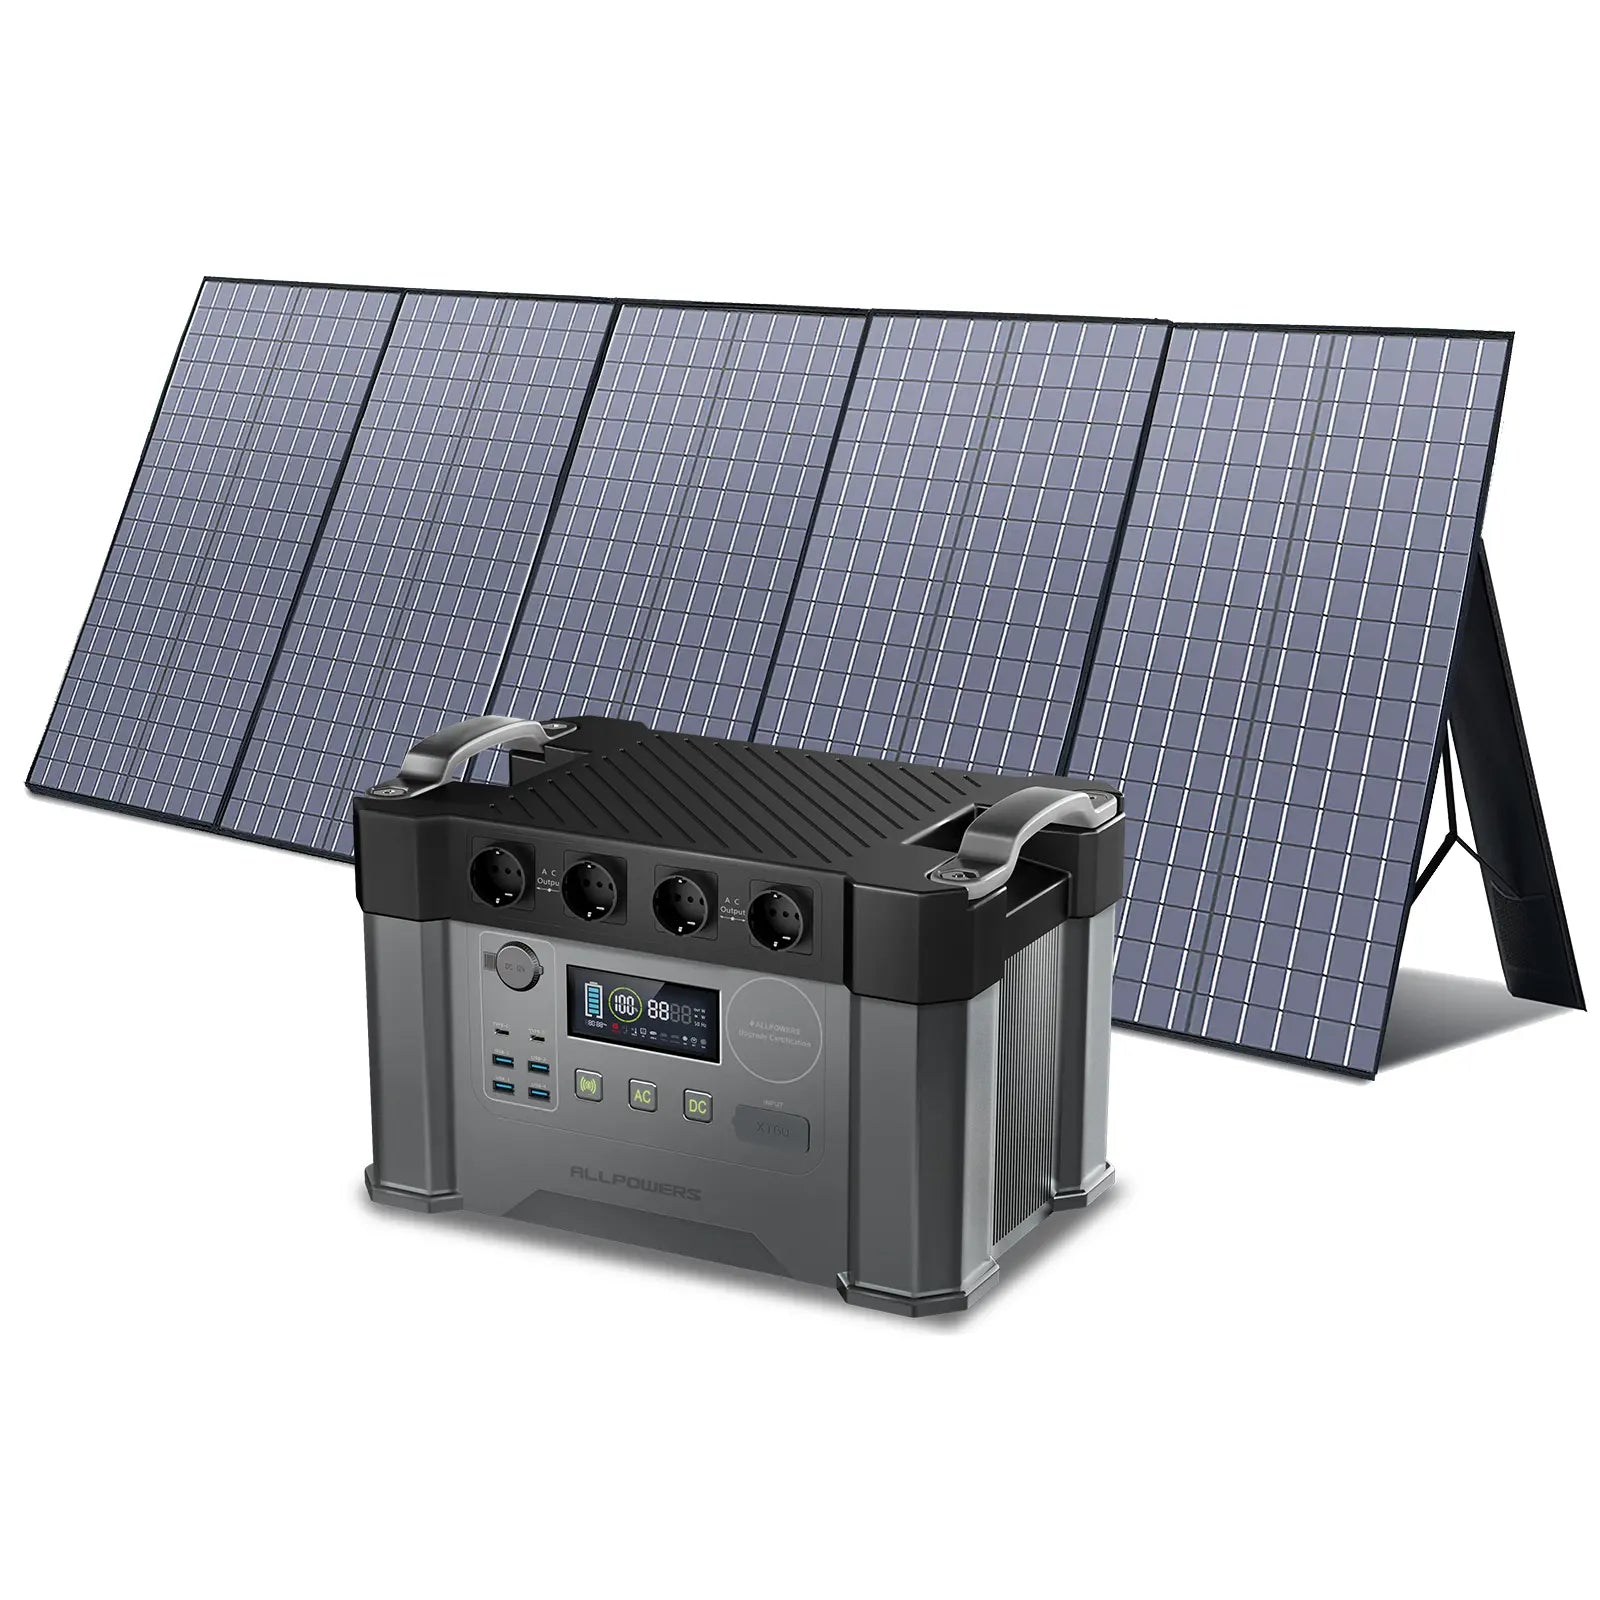 ALLPOWERS Kit Generatore Solare 2000W (S2000 + SP037 400W Pannello Solare)